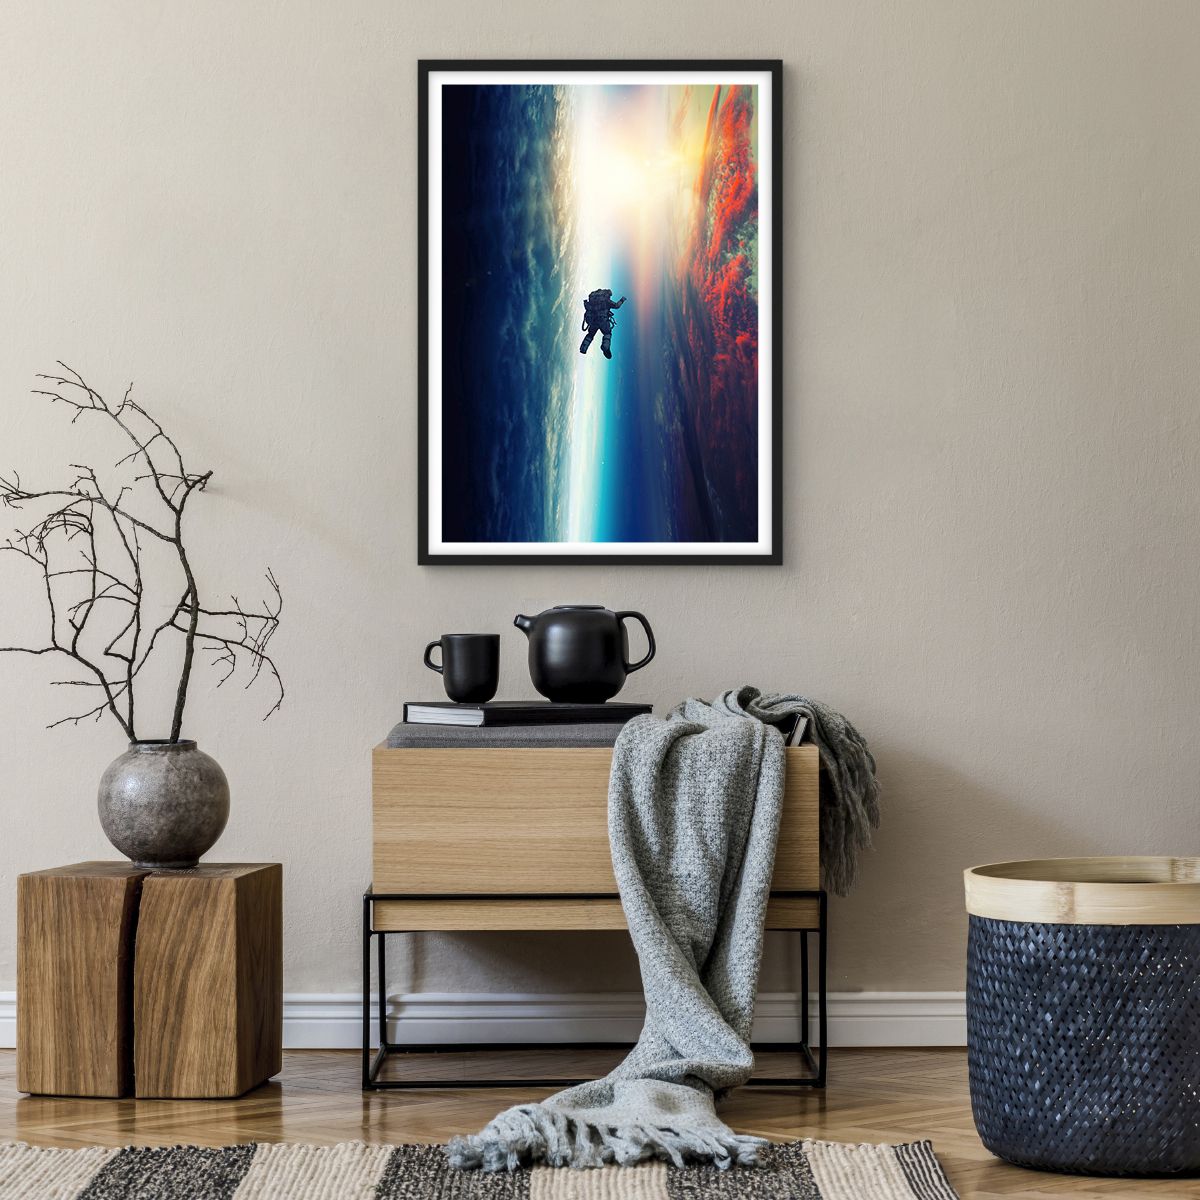 Poster in einem schwarzem Rahmen Abstraktion, Poster in einem schwarzem Rahmen Astronaut, Poster in einem schwarzem Rahmen Kosmos, Poster in einem schwarzem Rahmen Universum, Poster in einem schwarzem Rahmen Gravitation